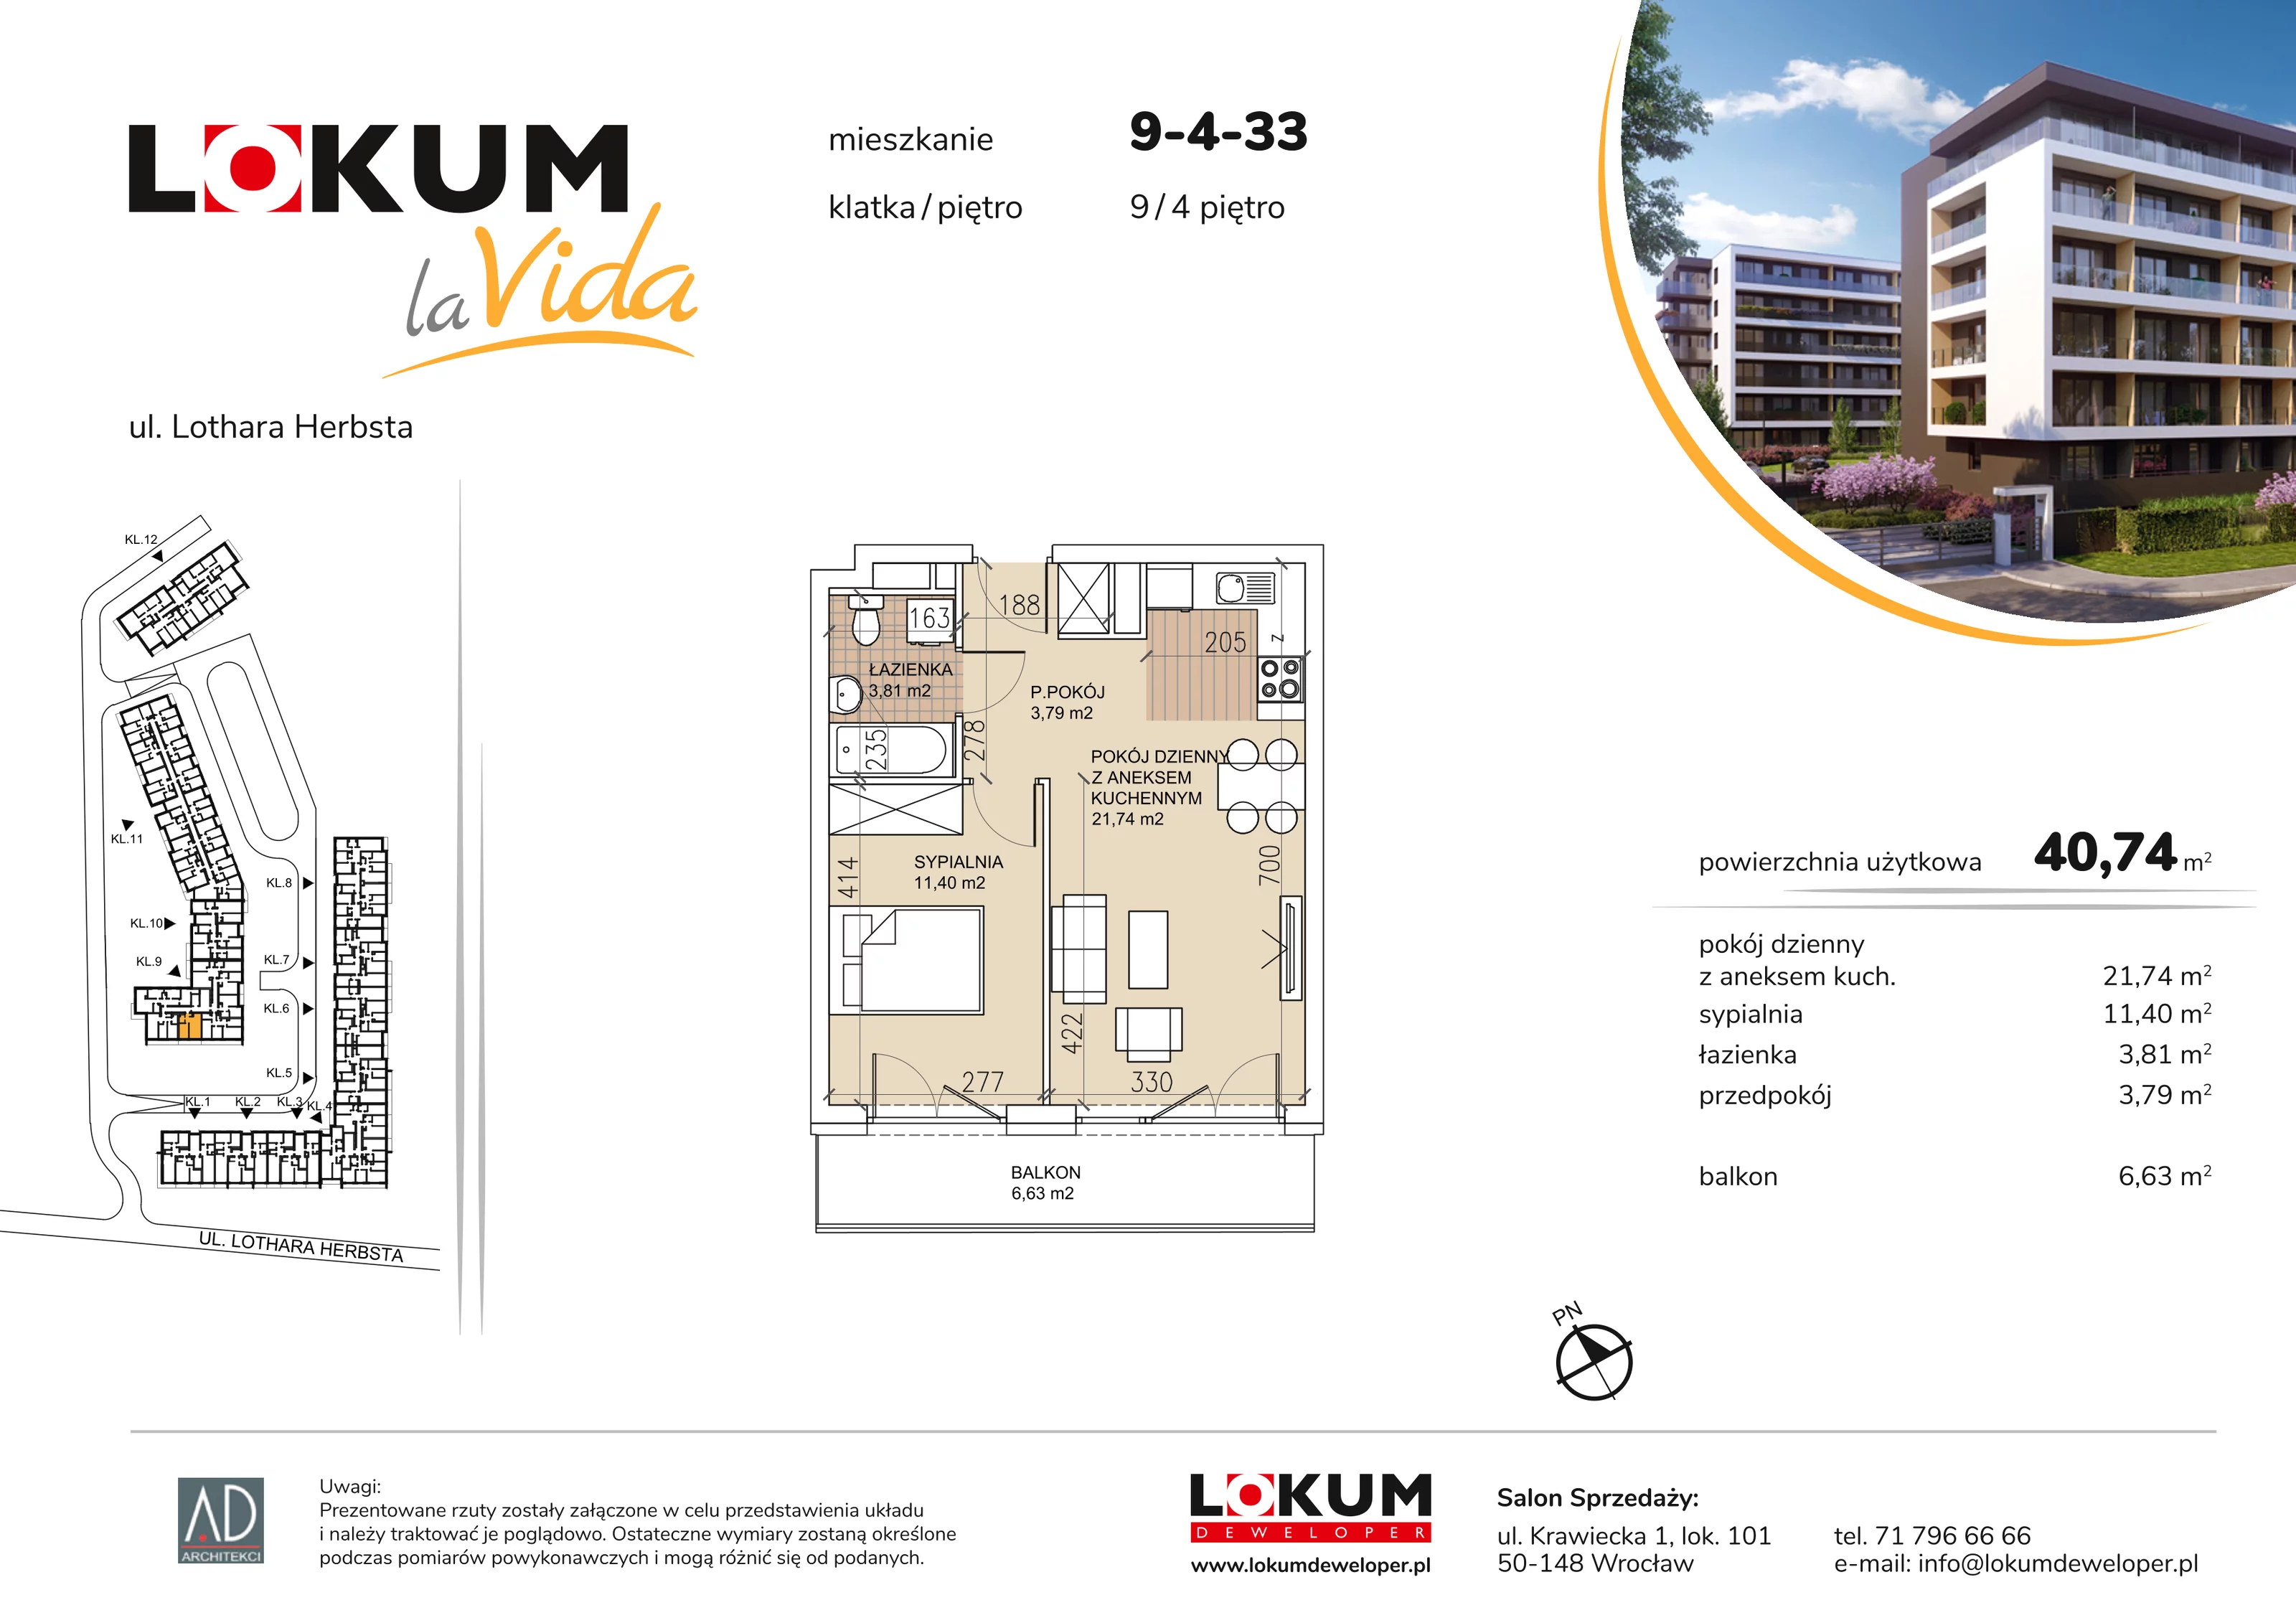 Mieszkanie 40,74 m², piętro 4, oferta nr 9-4-33, Lokum la Vida, Wrocław, Sołtysowice, ul. Lothara Herbsta